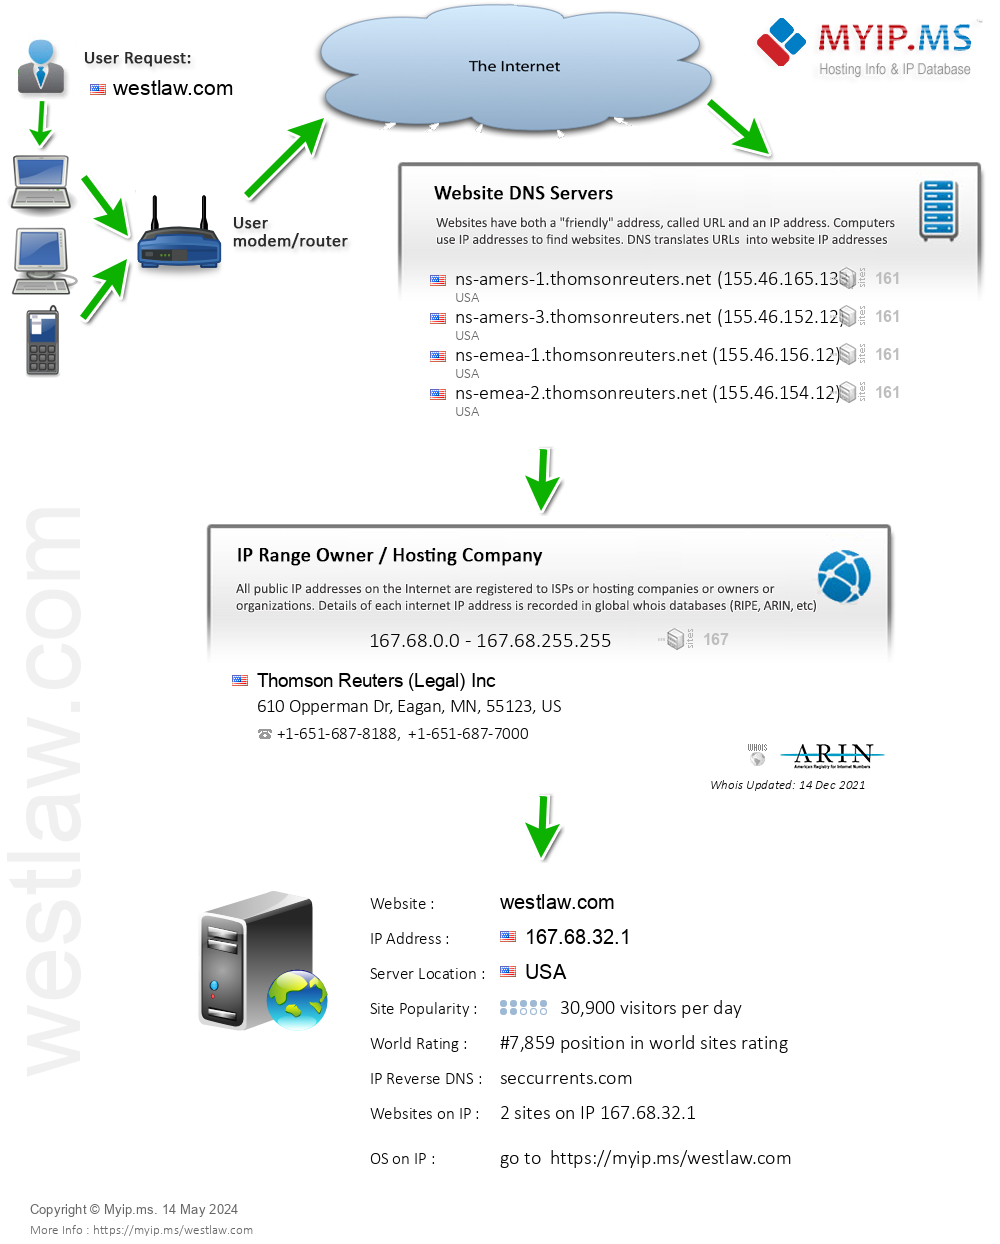 Westlaw.com - Website Hosting Visual IP Diagram